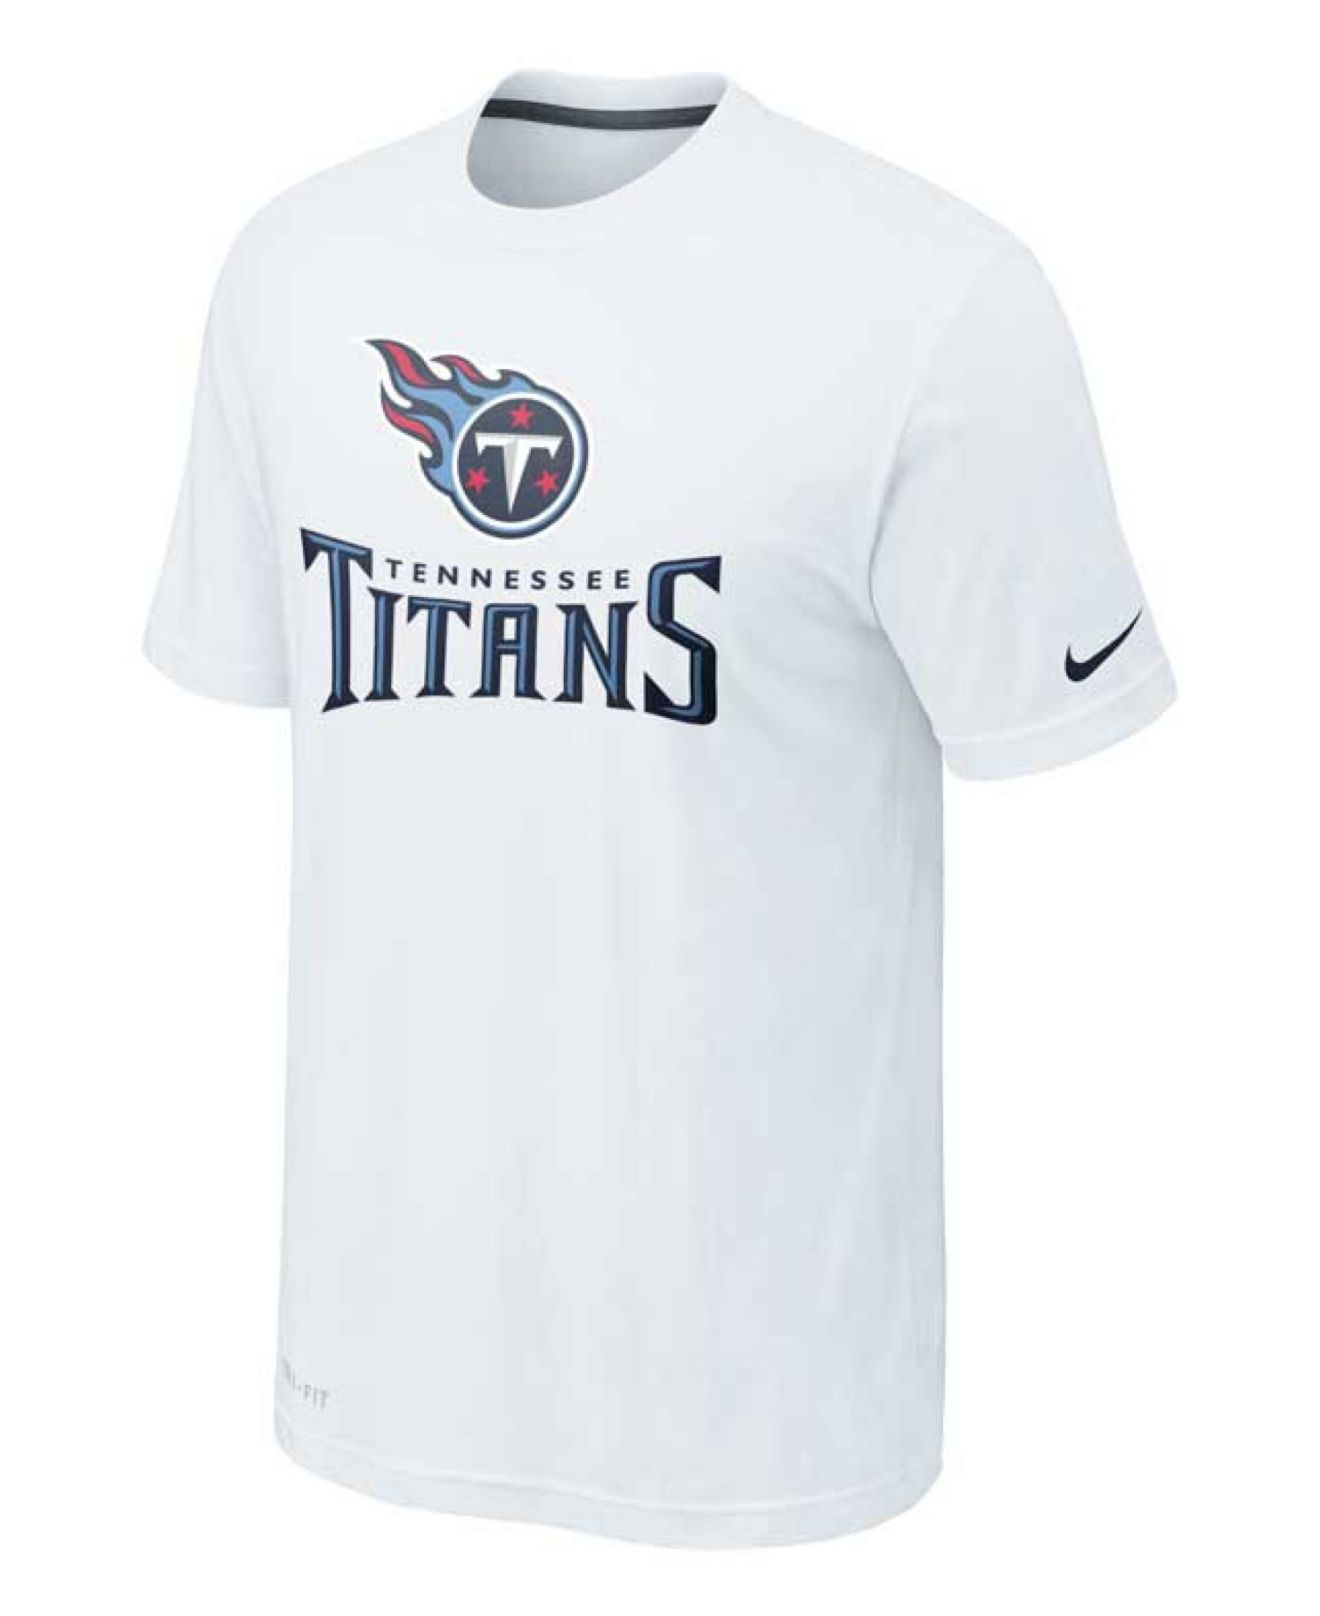 Lyst - Nike Men'S Short-Sleeve Tennessee Titans Logo T-Shirt in White ...